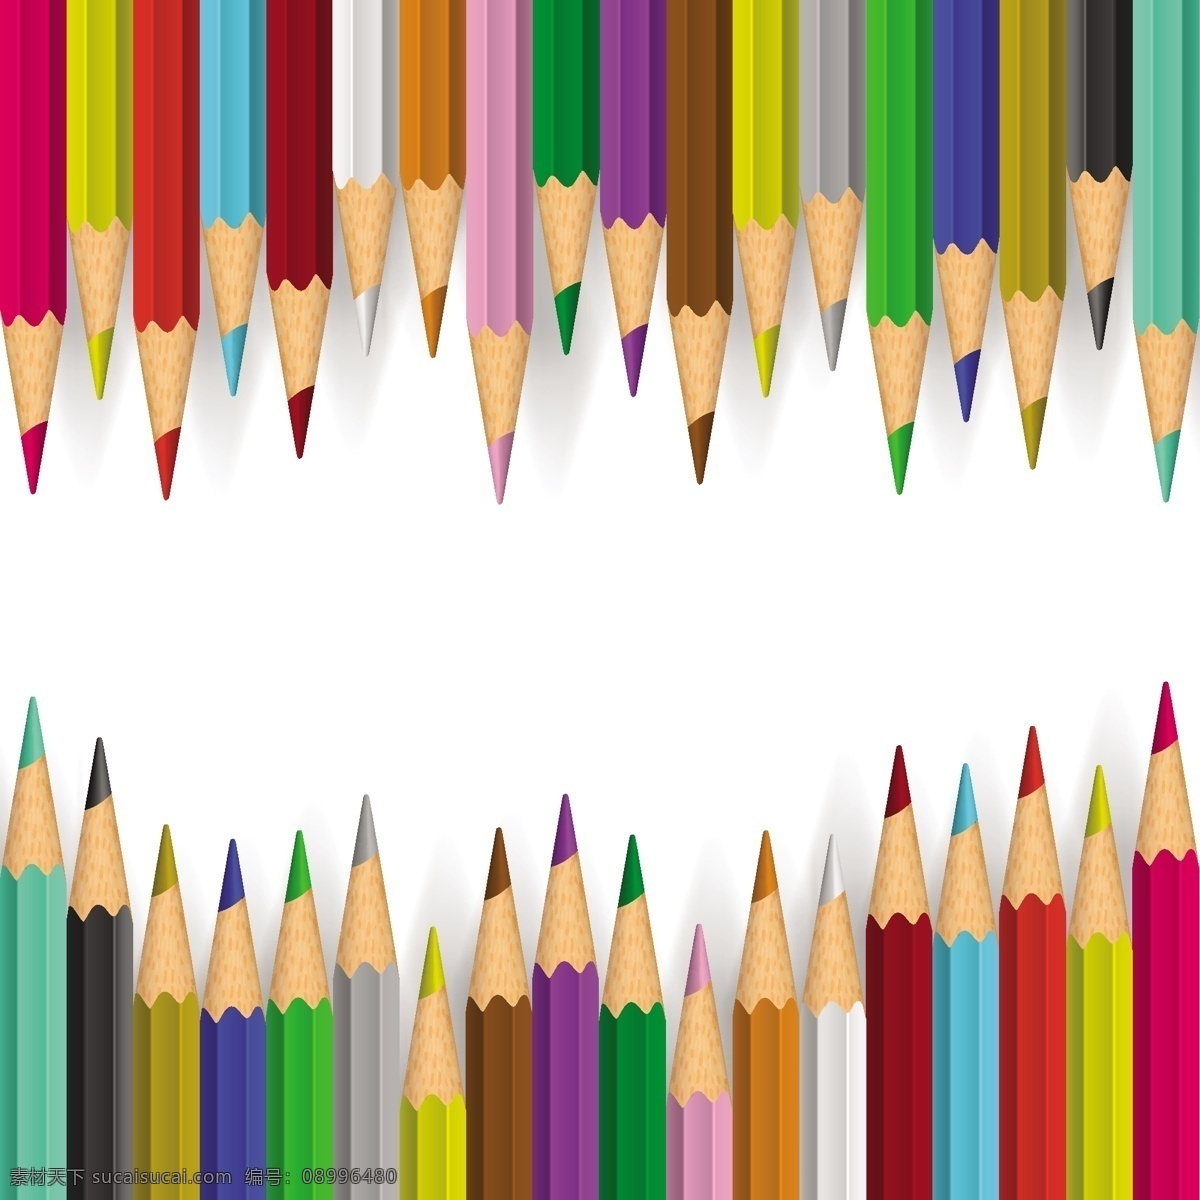 彩色画笔背景 彩色 画笔 铅笔 开学背景 新学期背景 文具 矢量 学习用品 开学素材 生活百科